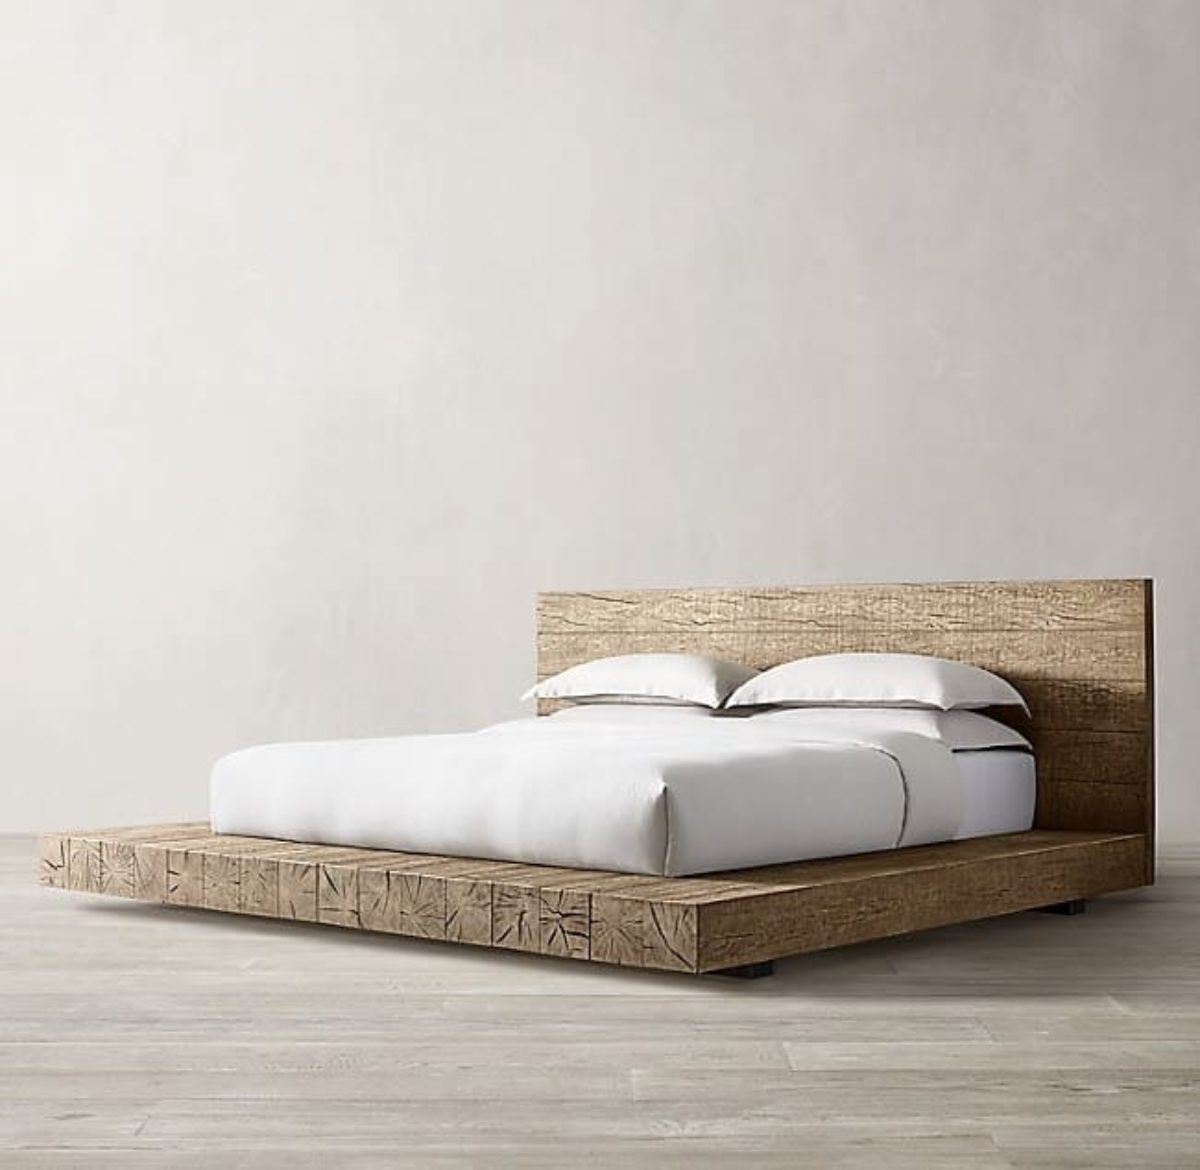 King size platform bed—because bigger is better